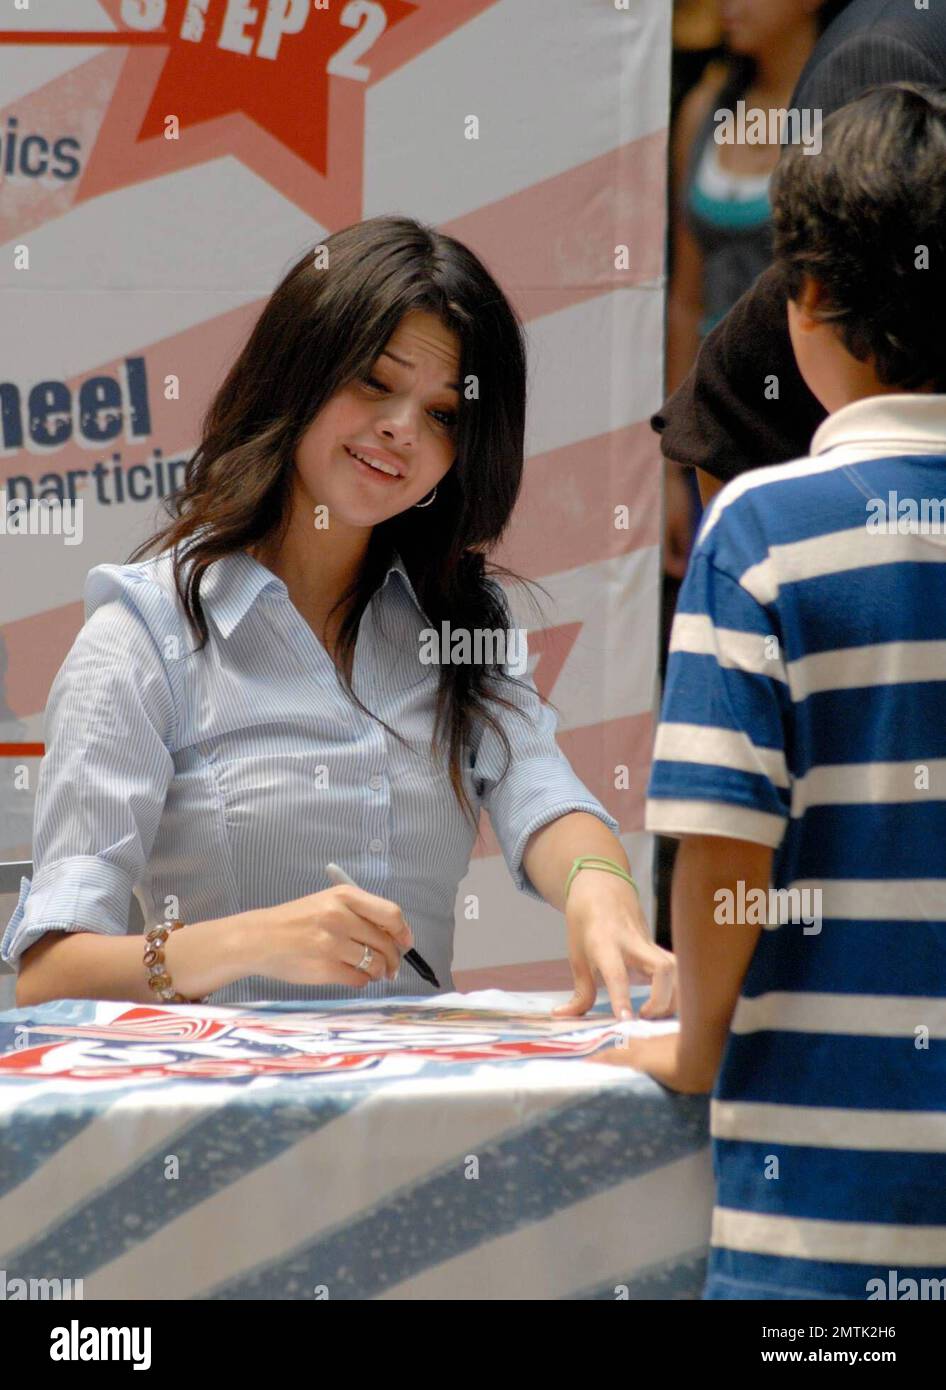 La estrella de Disney Selena Gómez firma autógrafos para los fans en un  evento para urvotecounts.com donde conoció a miles de niños que apoyaban  sus opiniones sobre el próximo presidente de los